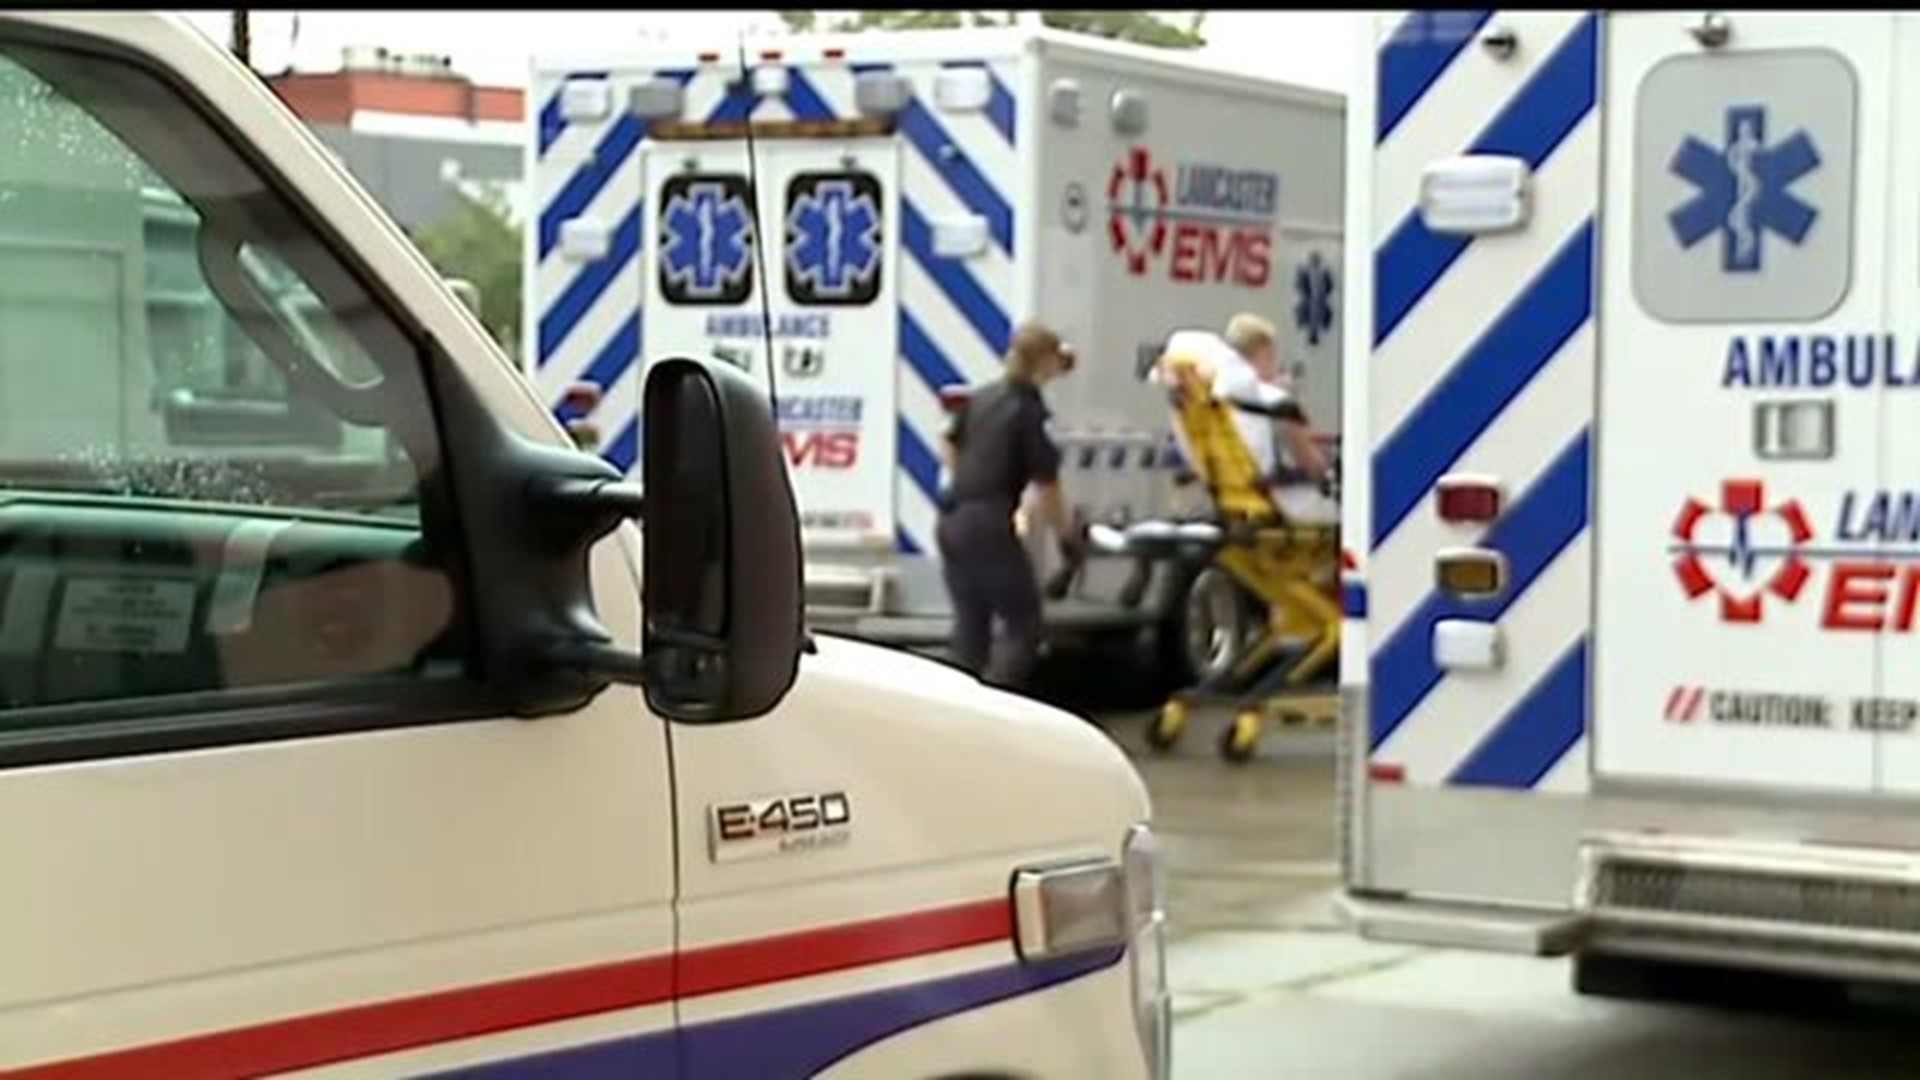 Ambulance association asks for funding